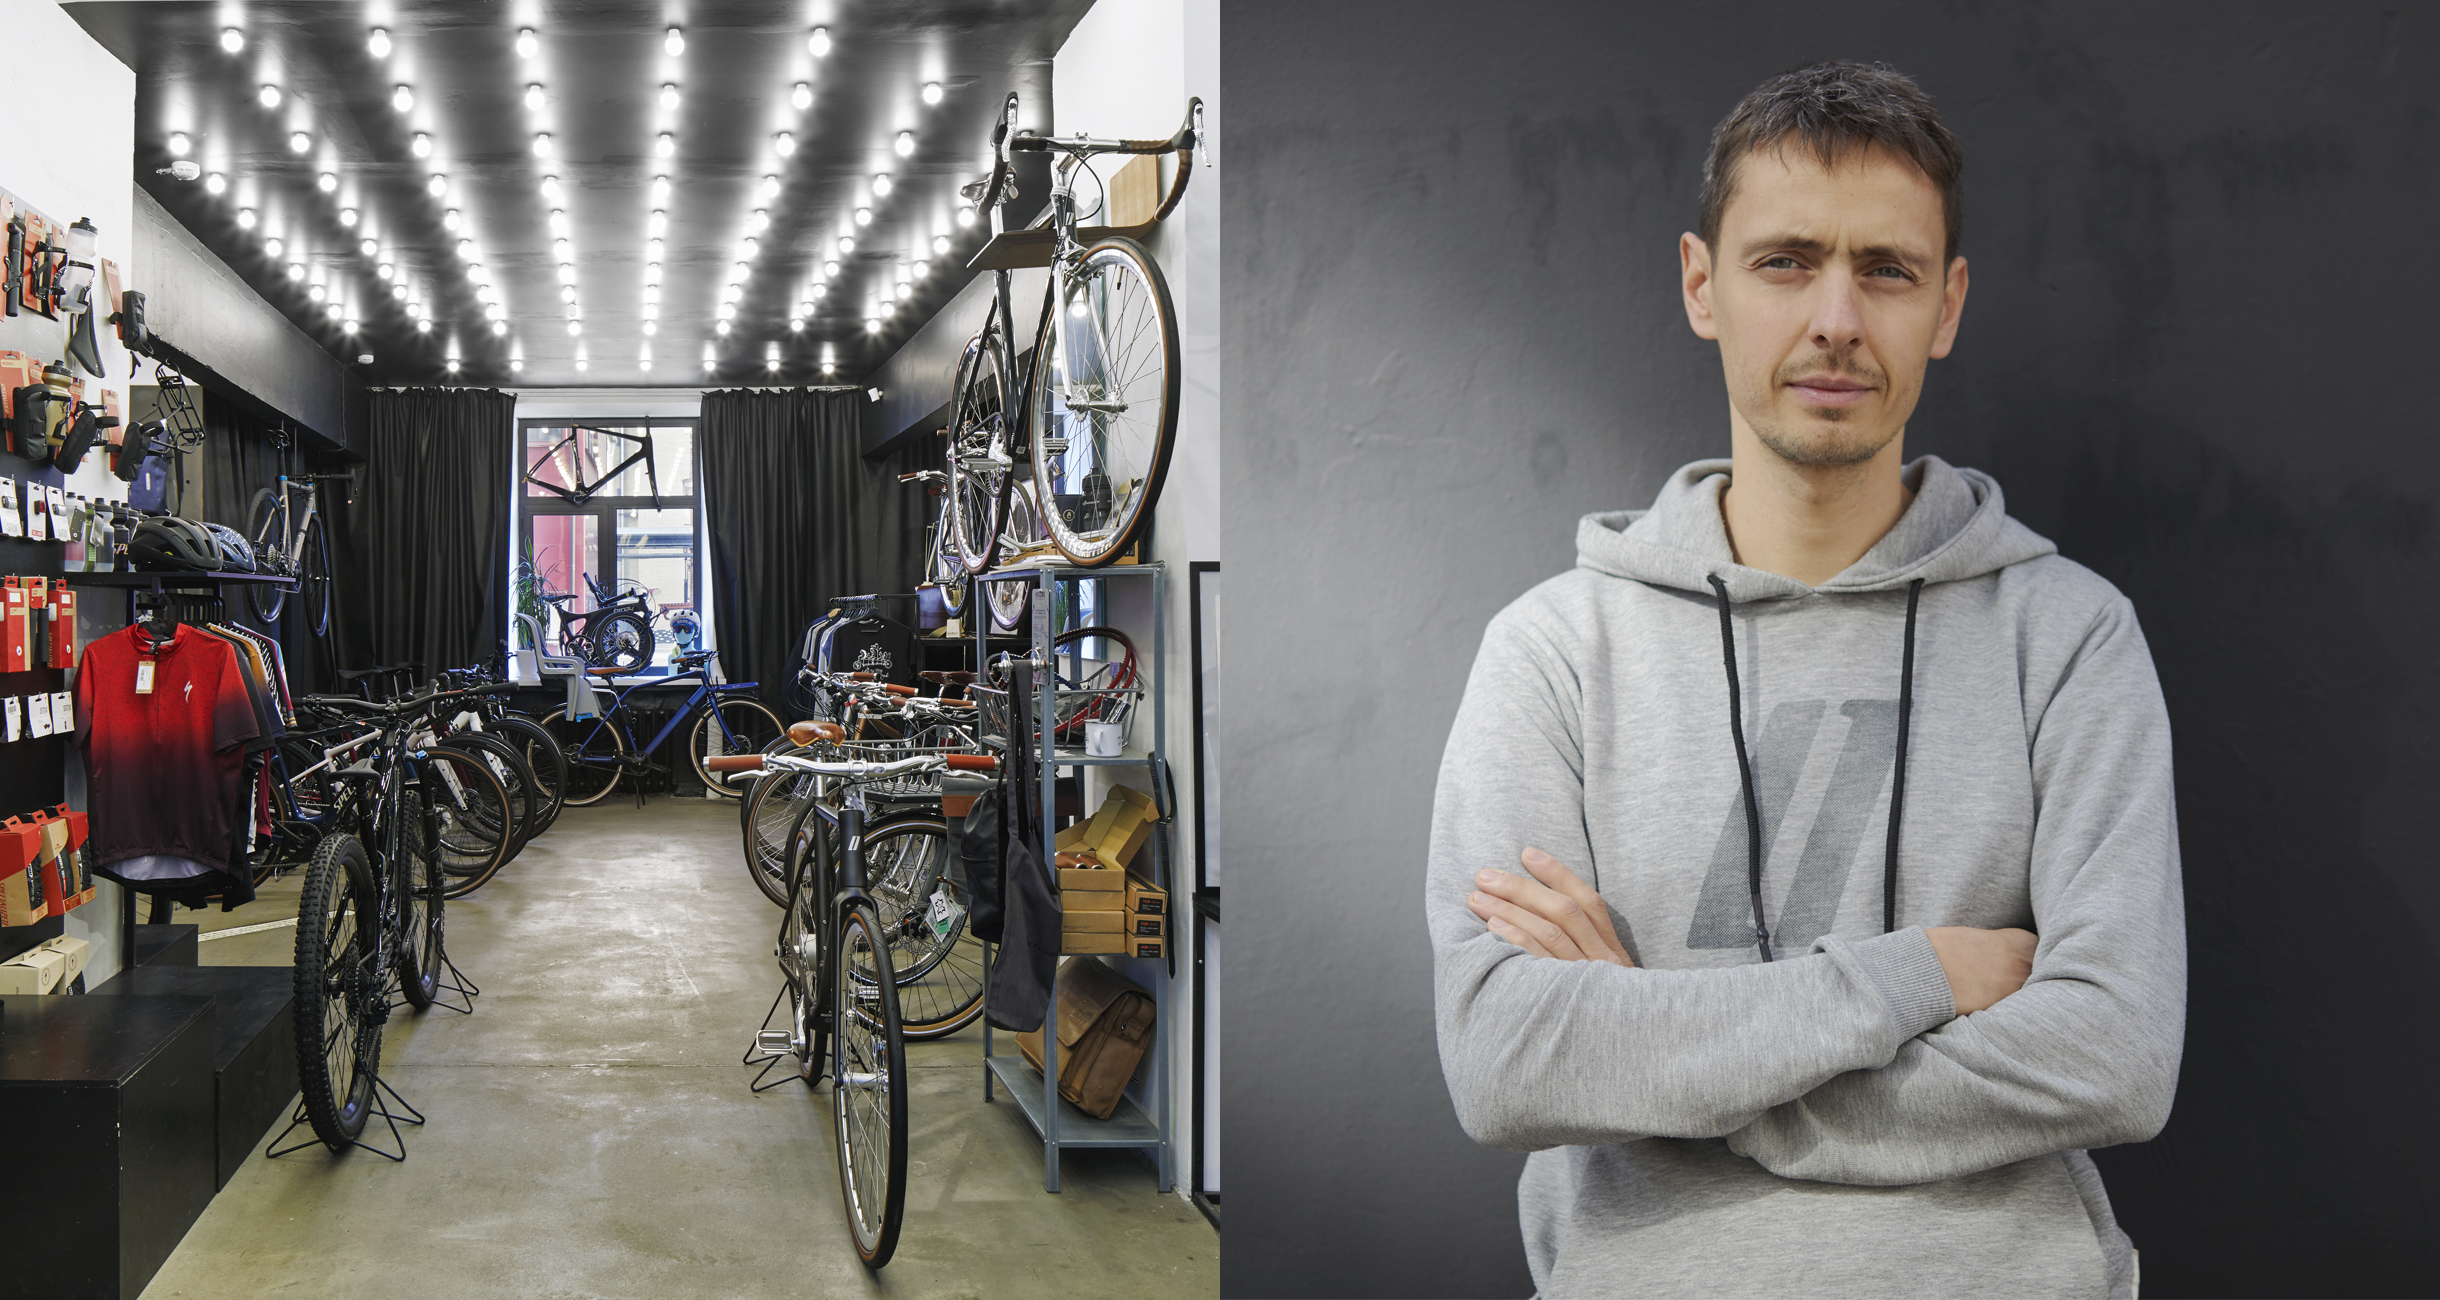 Купить трёхколёсный велосипед взрослый-означает выиграть - Статья 3 Колеса в Киеве